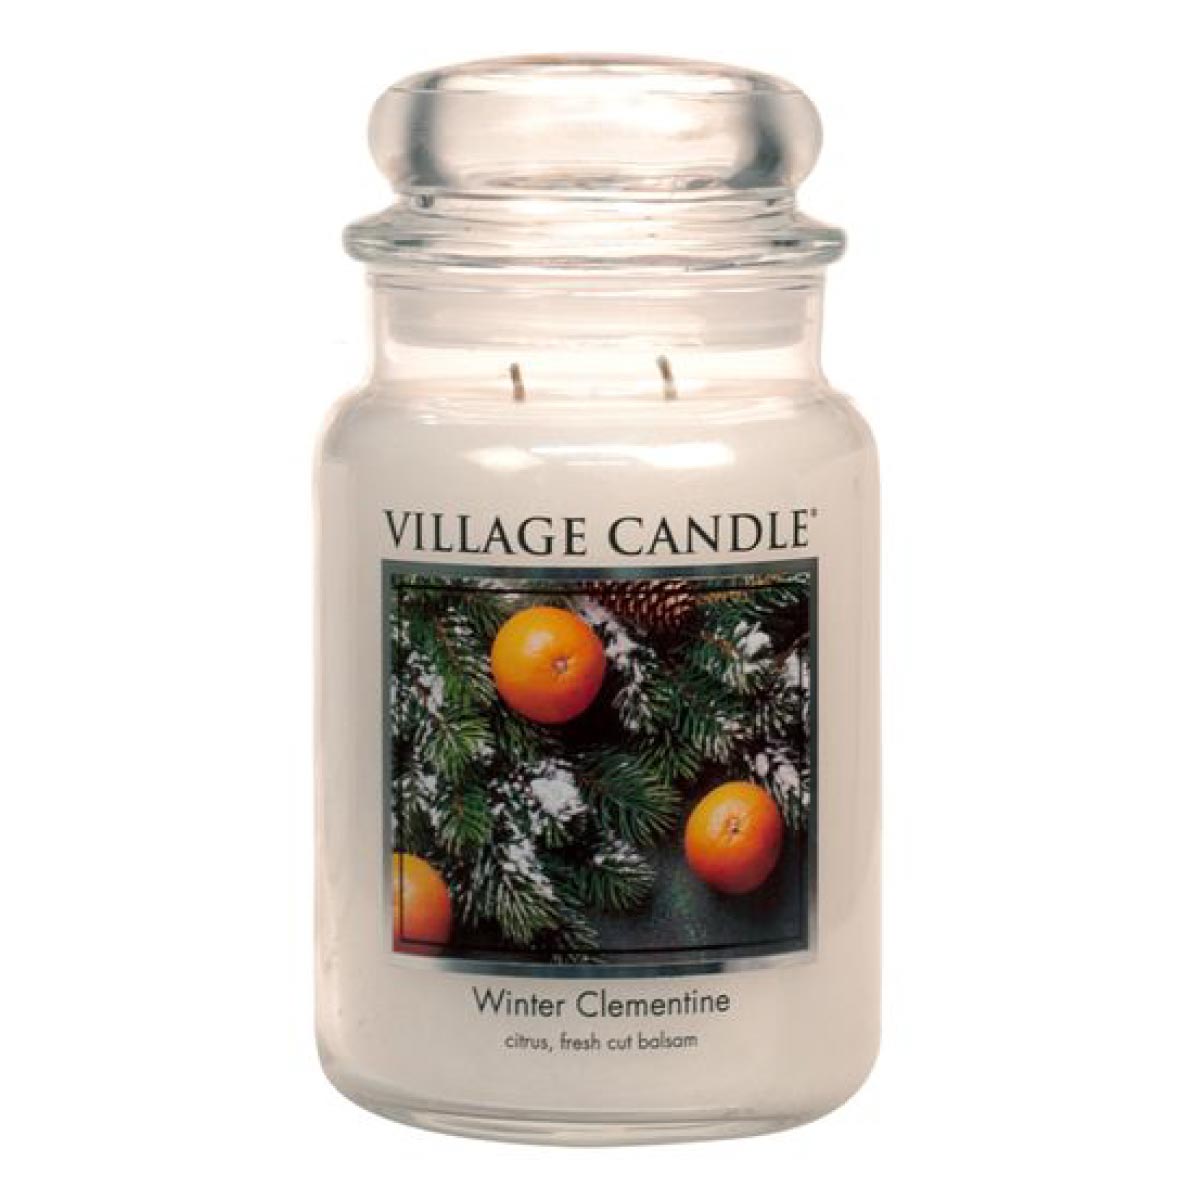 Winter Clementine - Duftkerze im Glas 602g - Village Candle®